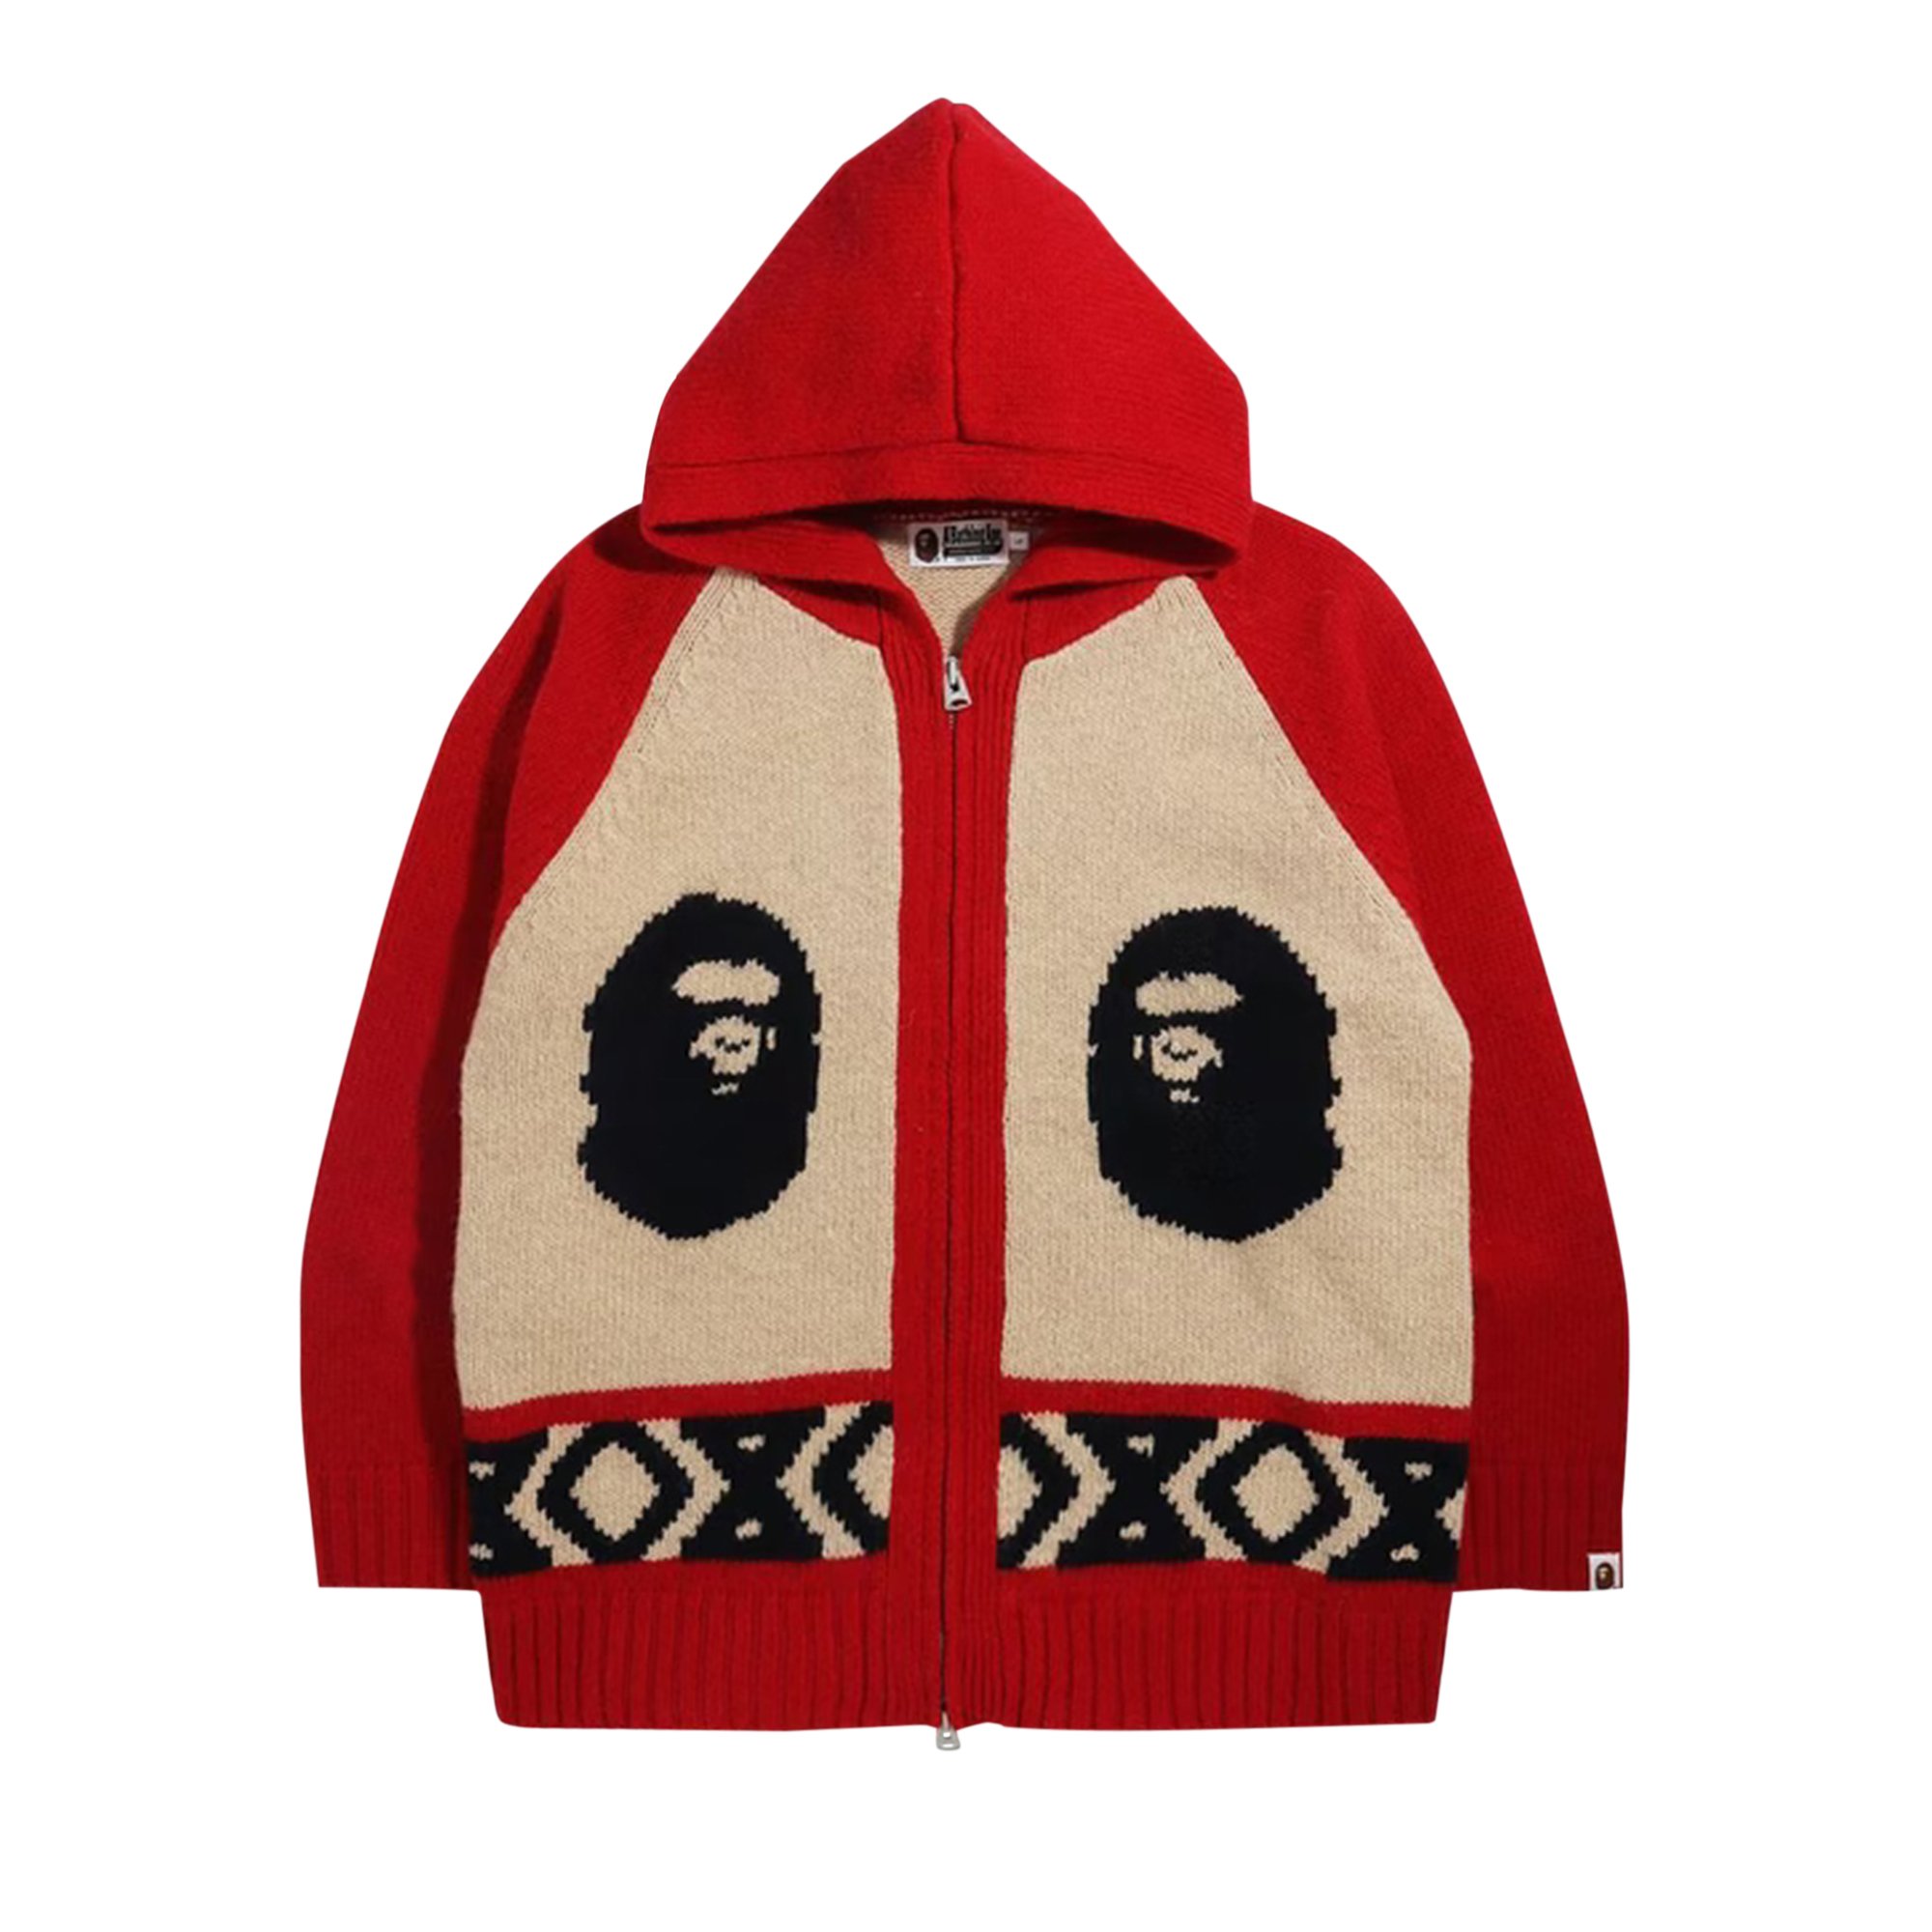 Buy BAPE Ape Head Knit Zip Hoodie 'Red' - 1H80 120 002 RED | GOAT